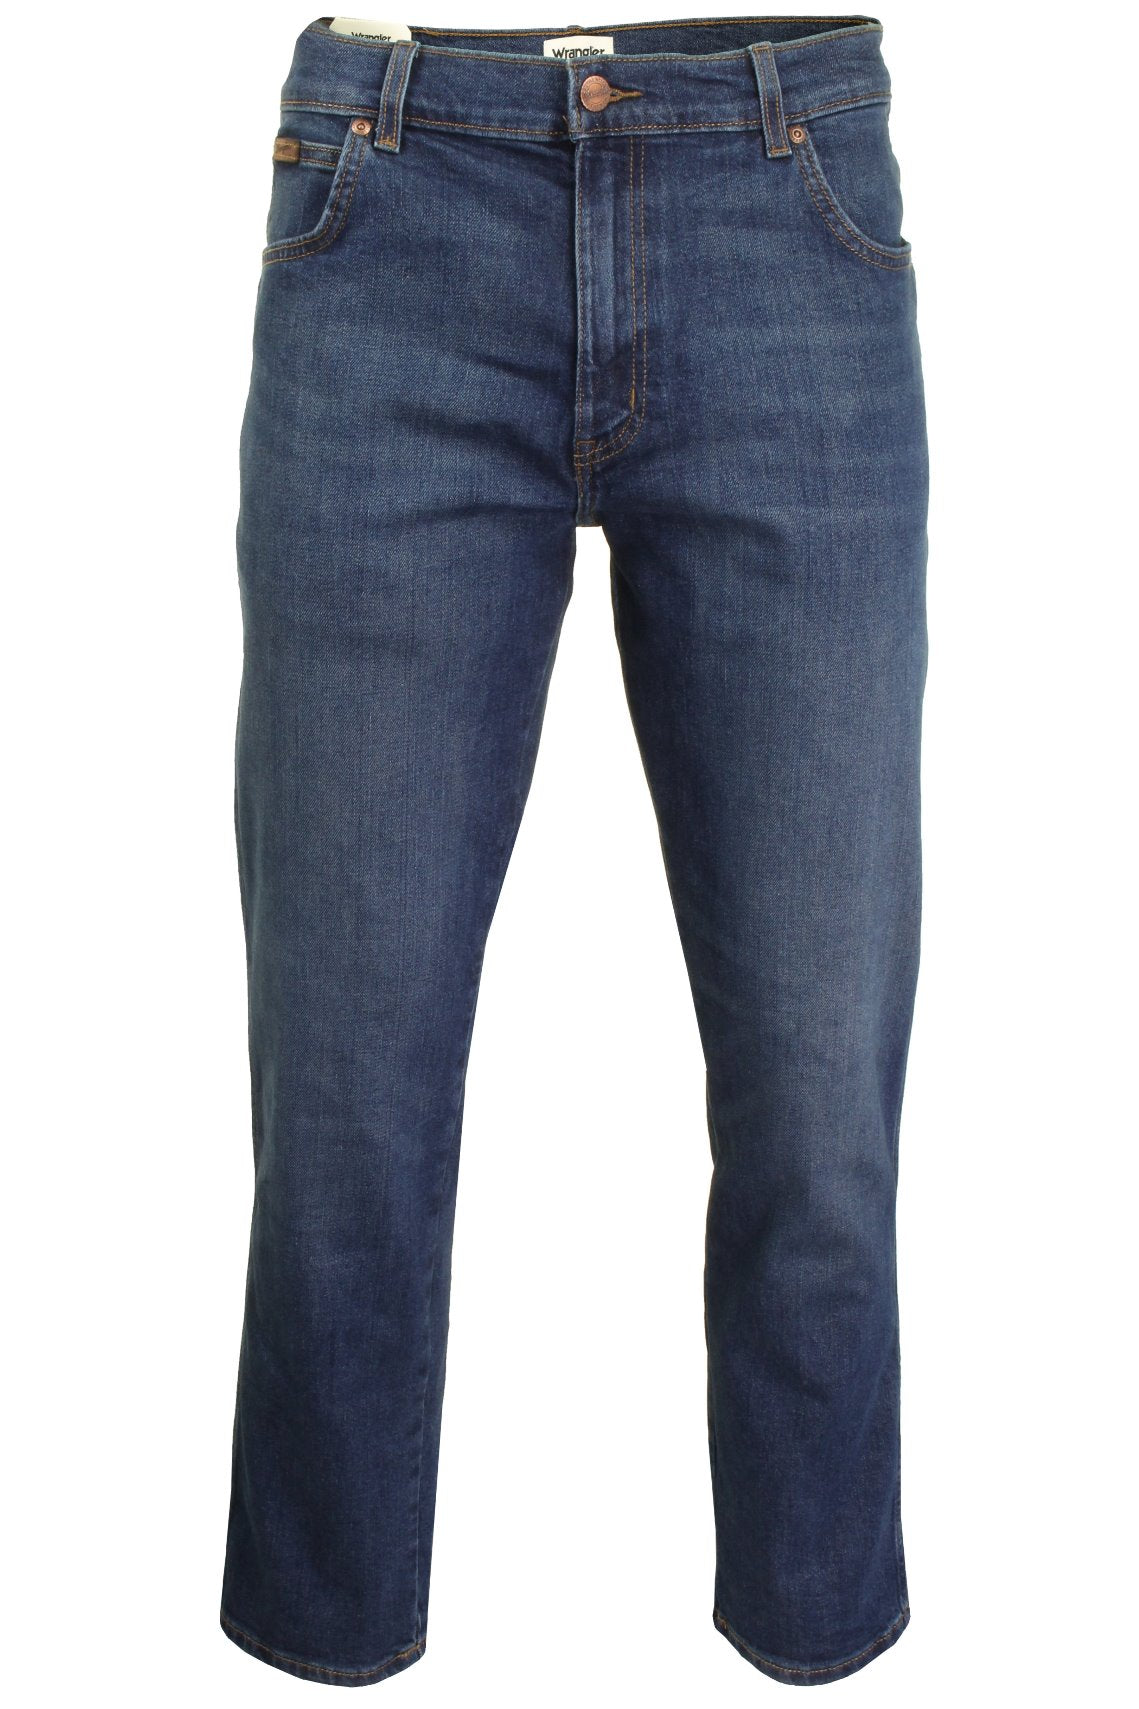 Mens Wrangler 'Texas' Jeans - Denim Stretch - Original Straight Fit, 01, W121-Core, Indigo Wit